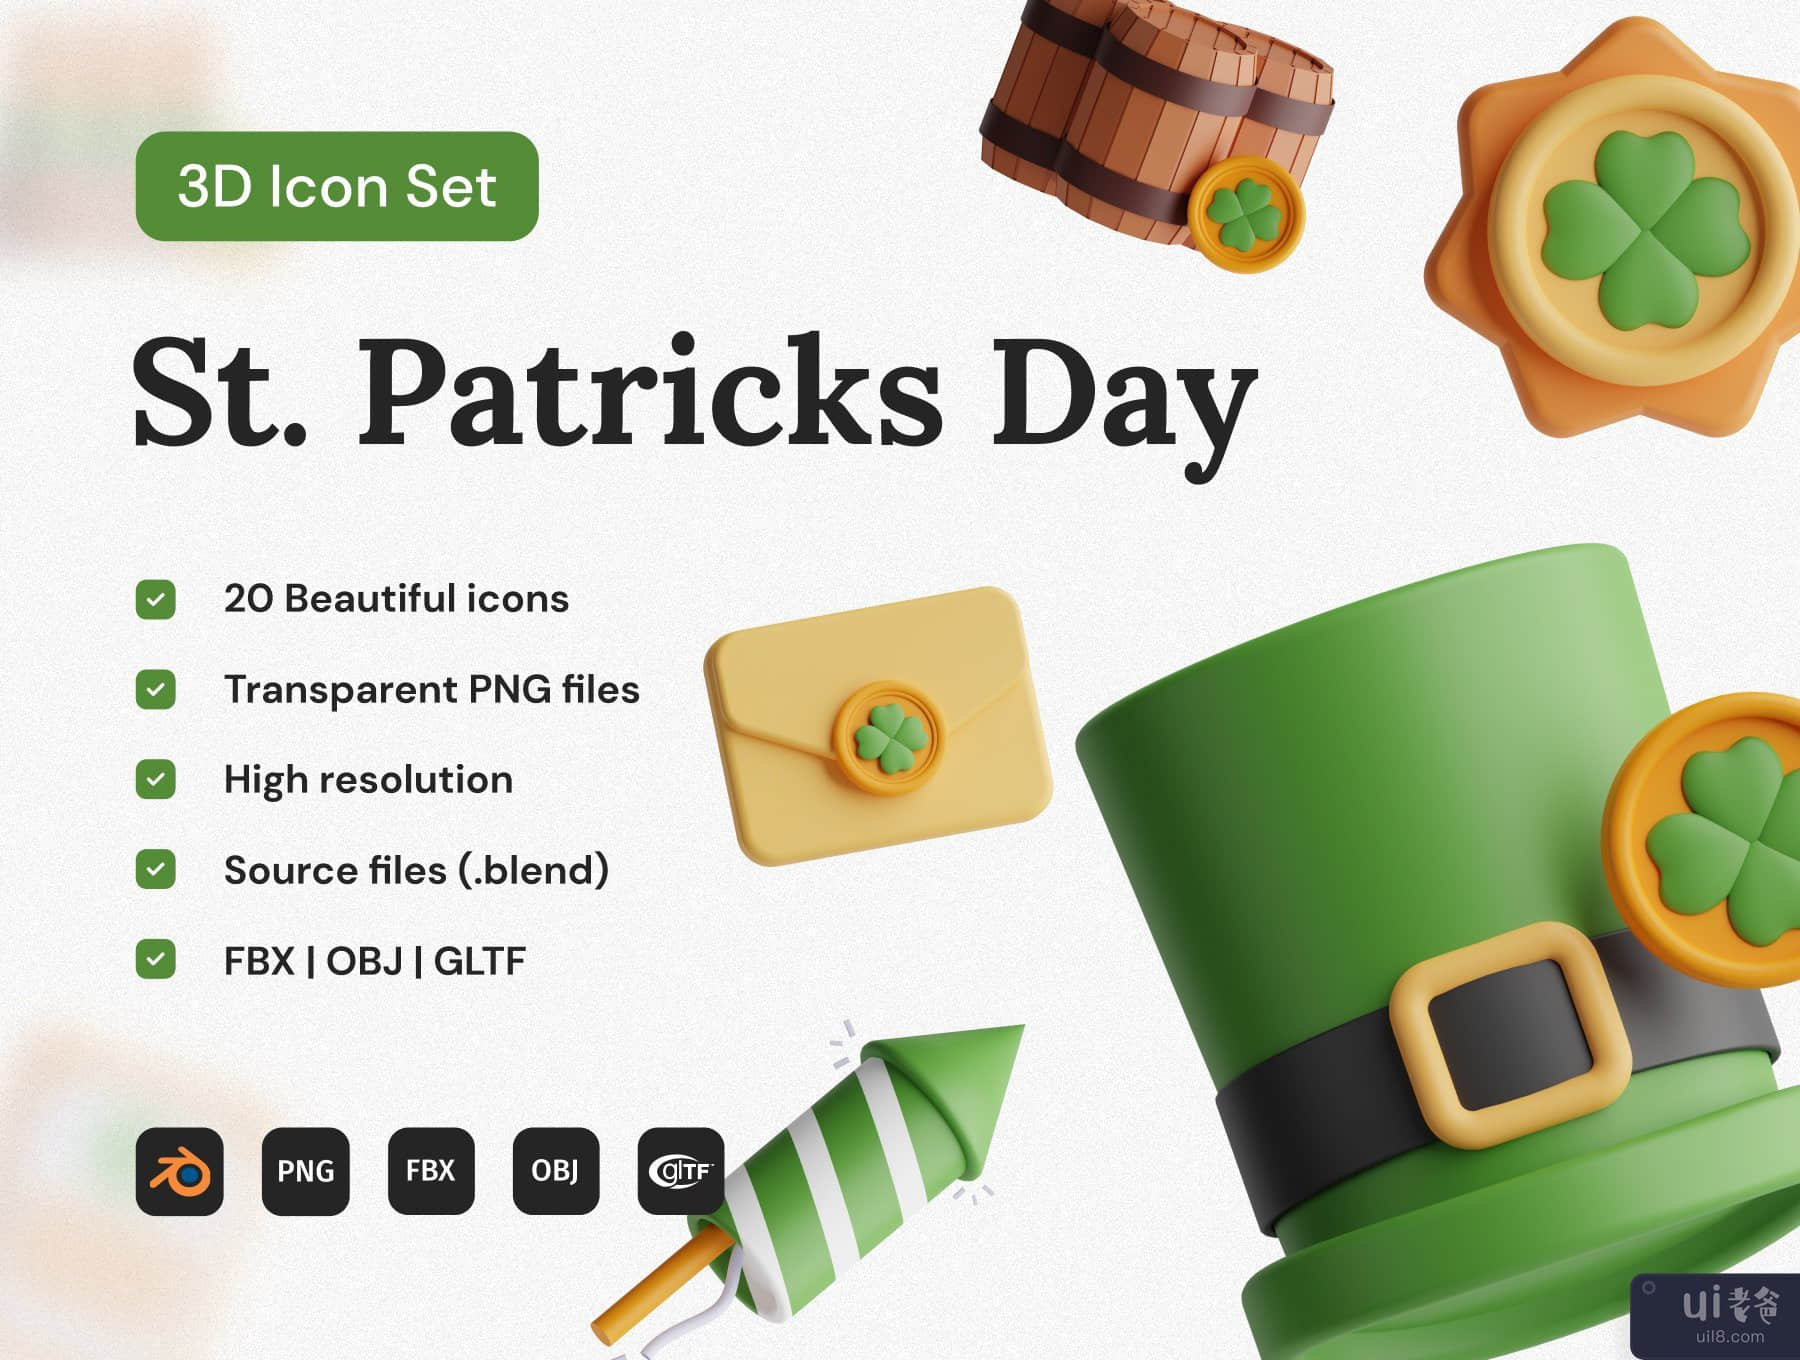 圣帕特里克节 3D 图标集 (St. Patricks Day 3D Icon Set)插图7